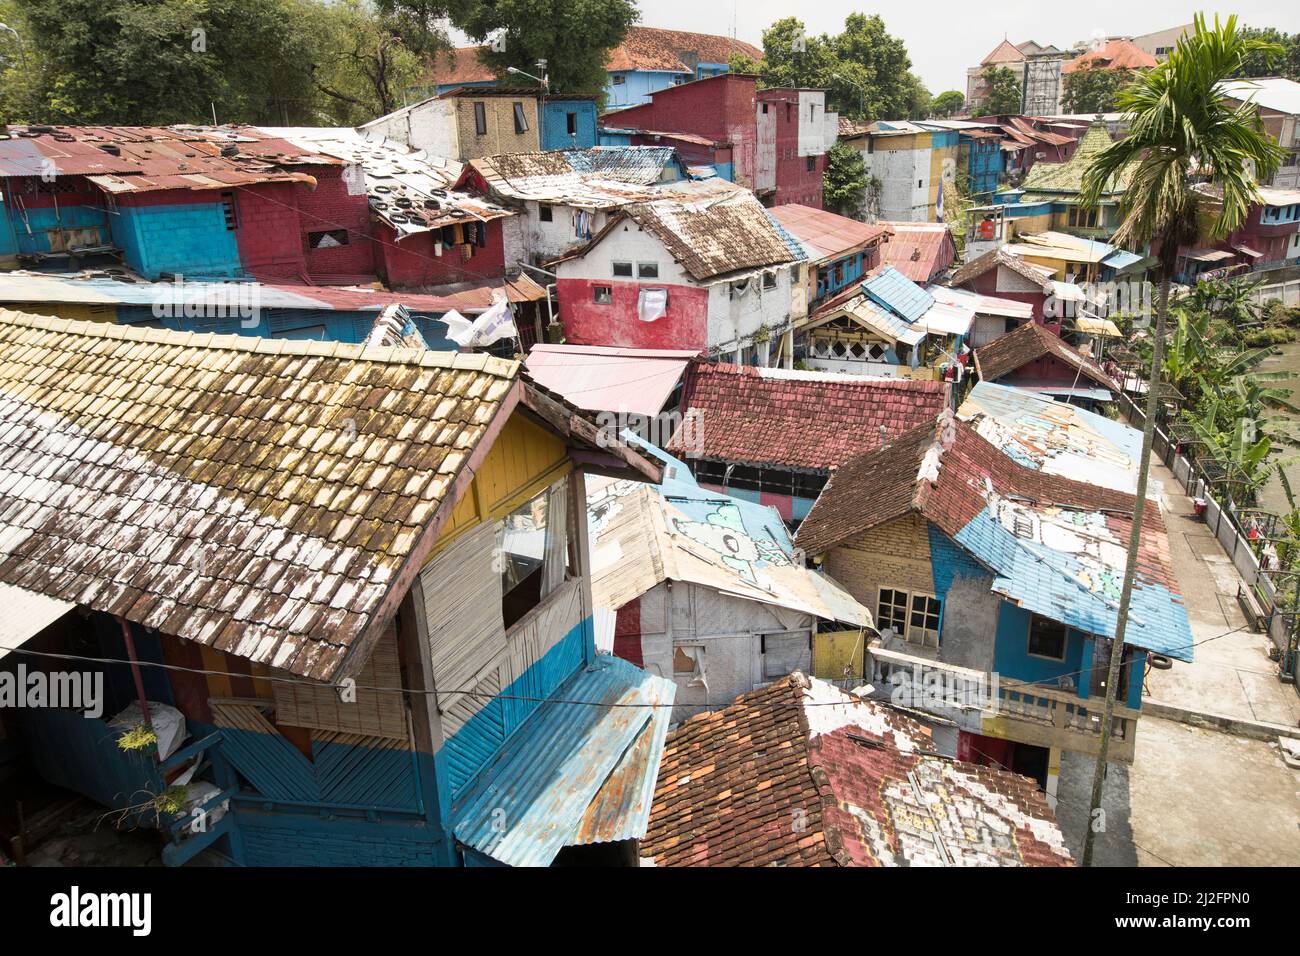 Des bidonvilles colorés surpeuplés à Yogyakarta (Jogjakarta), la deuxième plus grande ville d'Indonésie. Banque D'Images